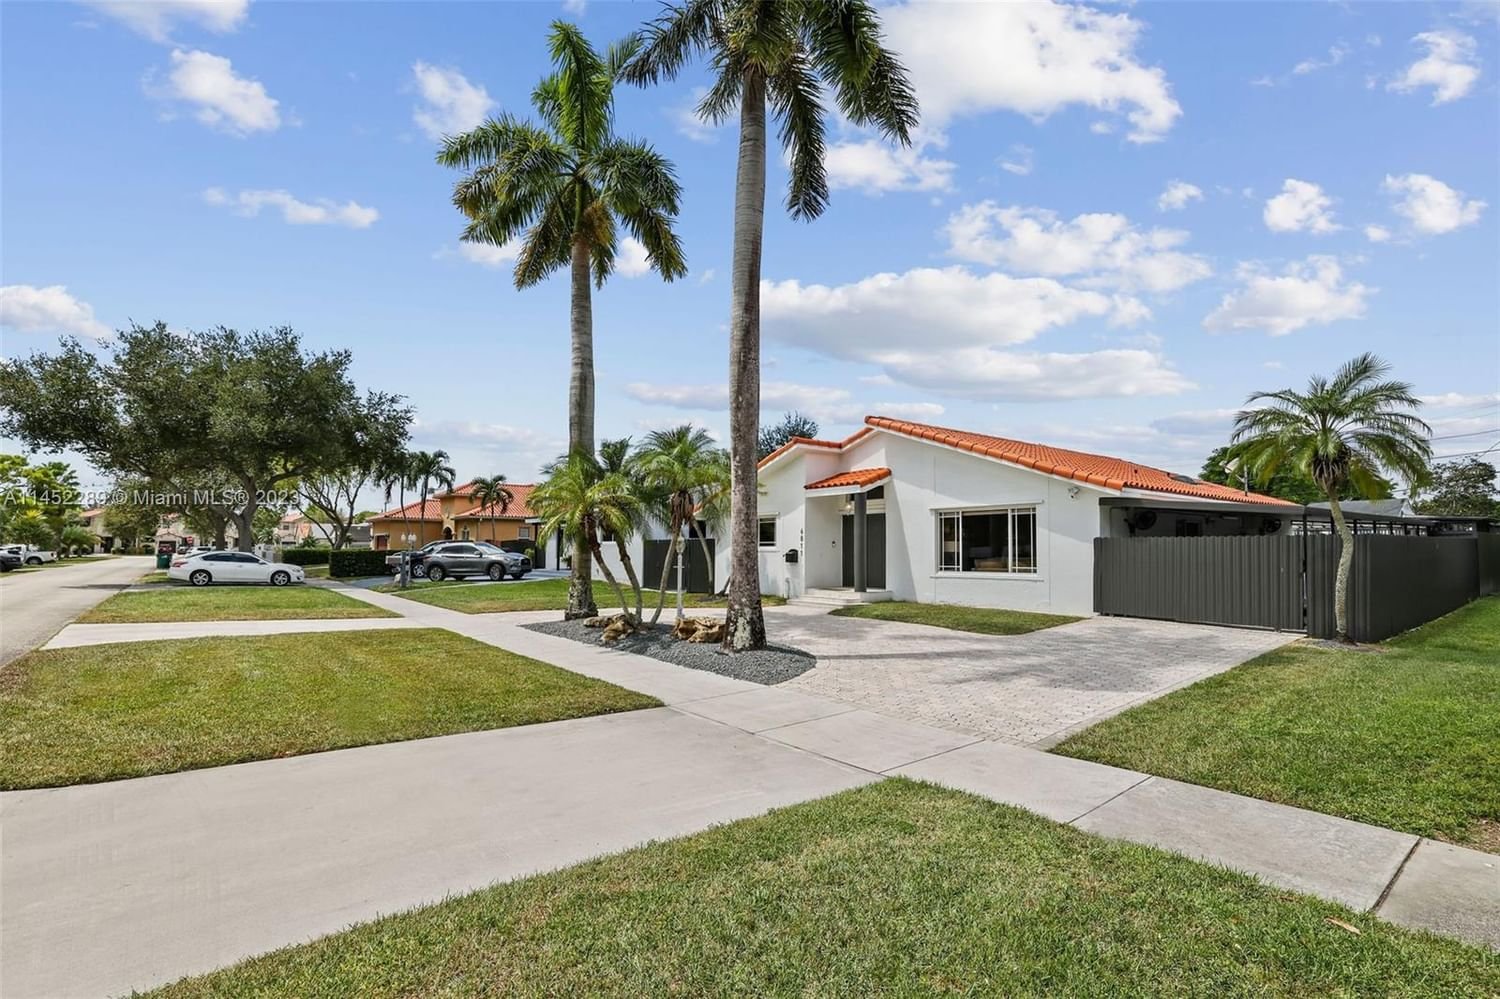 Real estate property located at 6811 38th St, Miami-Dade County, CENTRAL MIAMI PT 3, Miami, FL